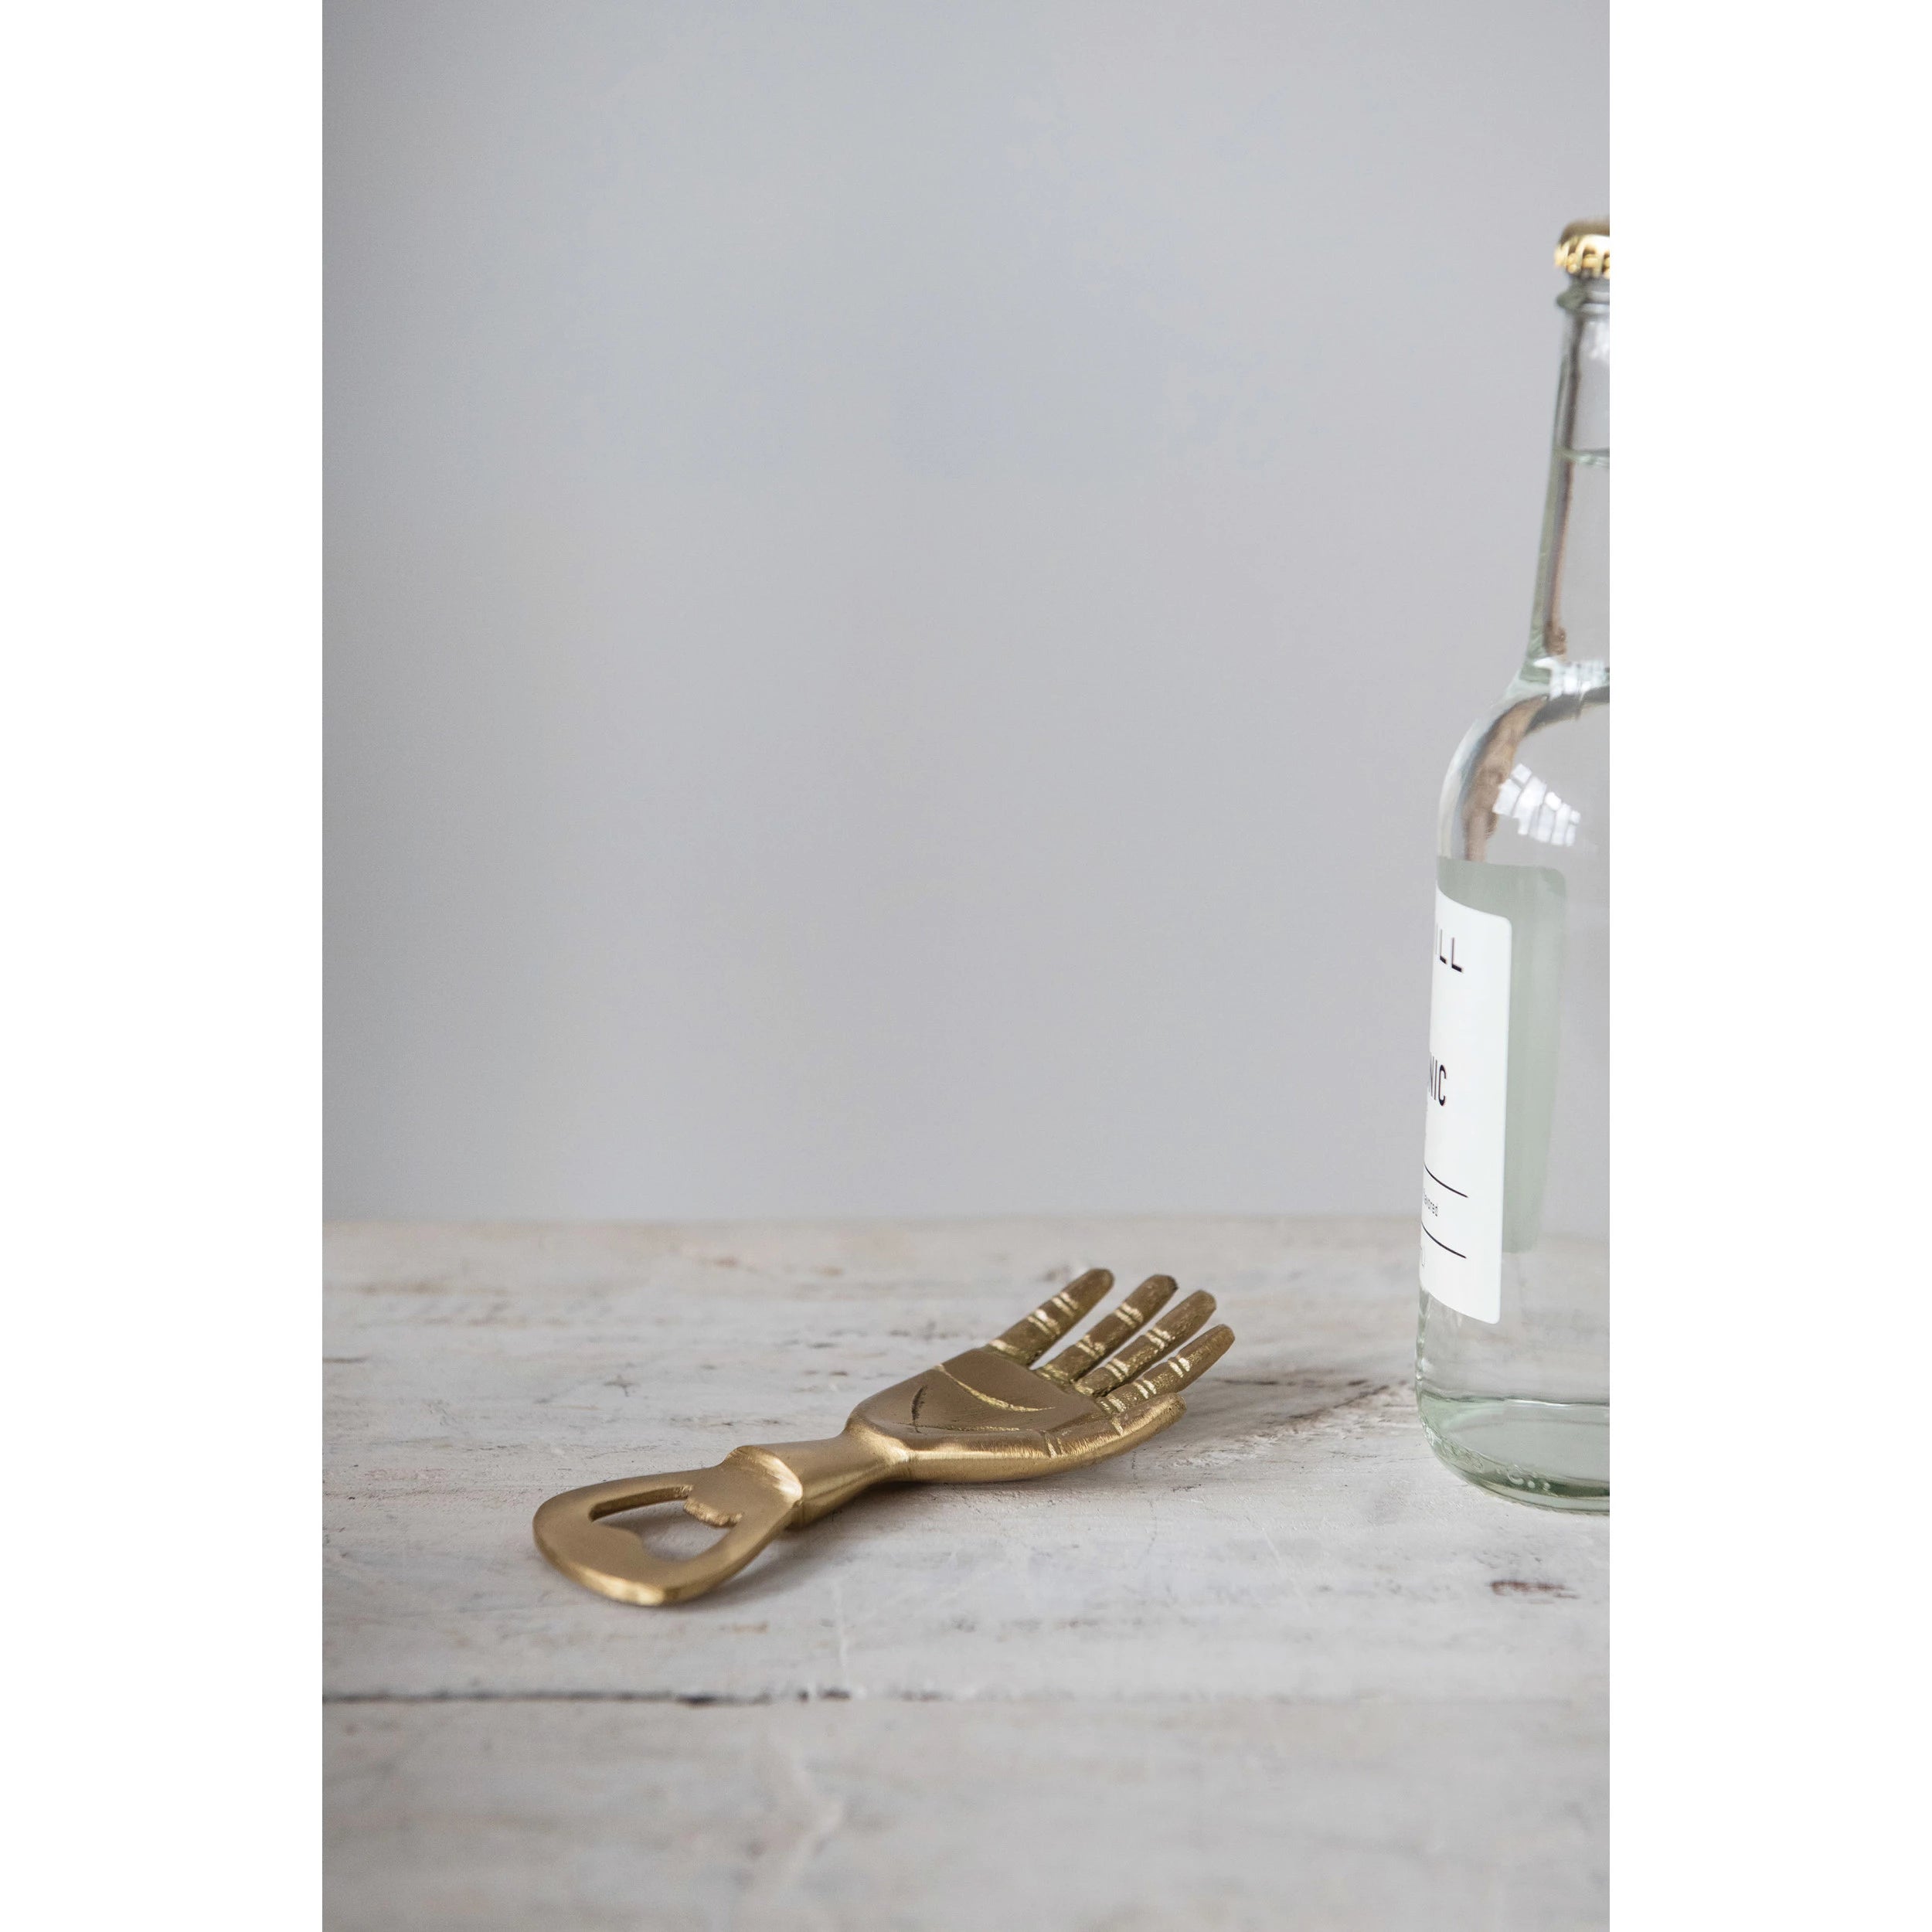 5" Brass Hand Bottle Opener